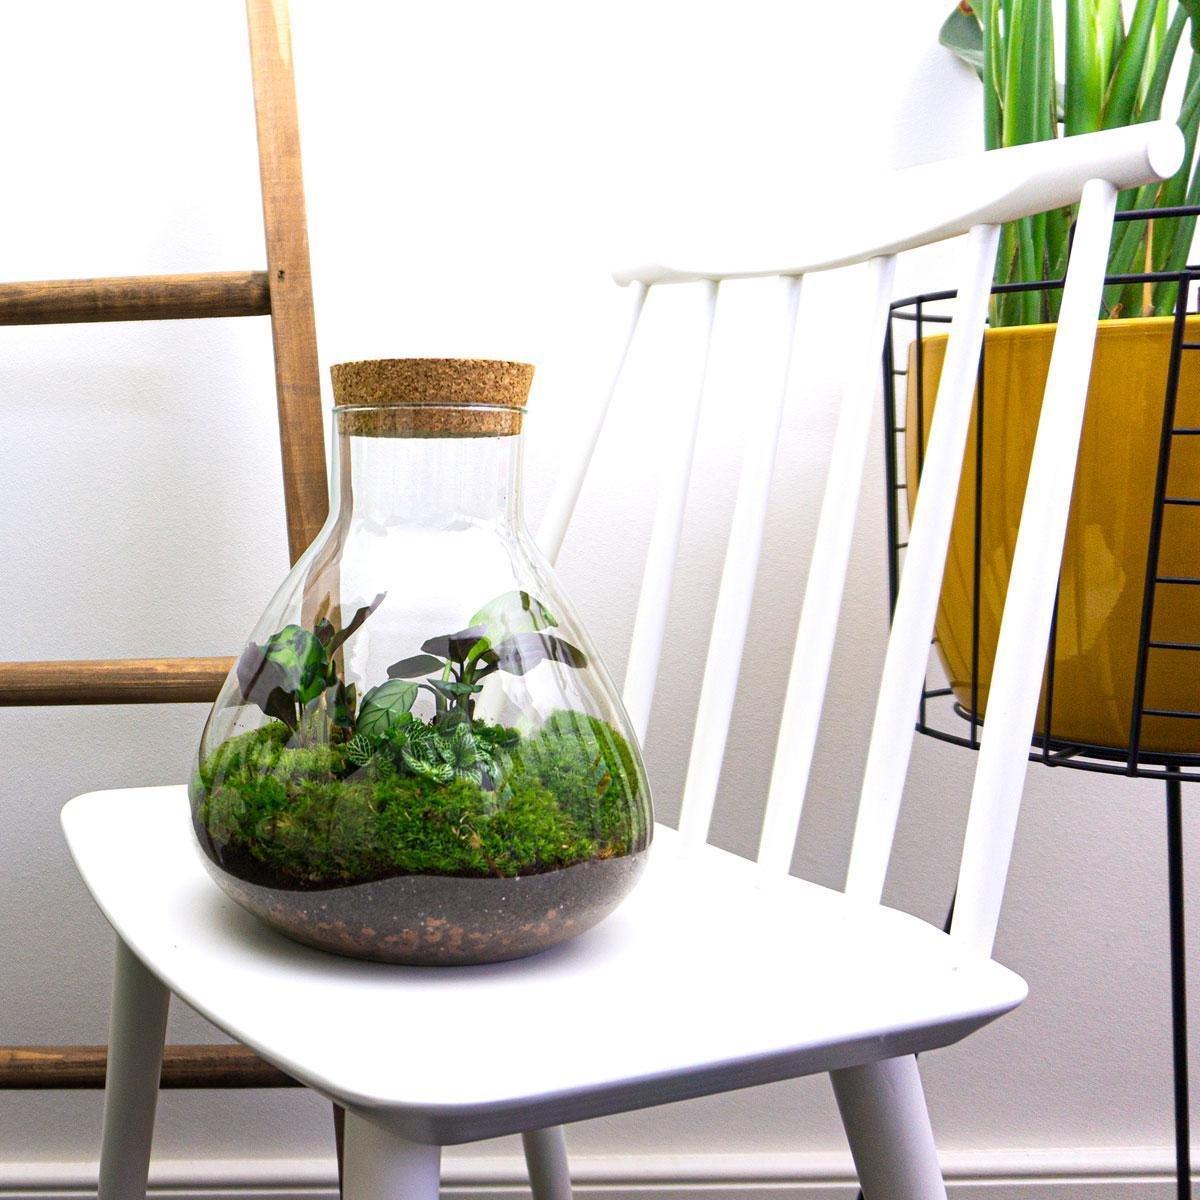 Kit DIY Terrarium Primo XLarge - Bouchons et 2 plantes à